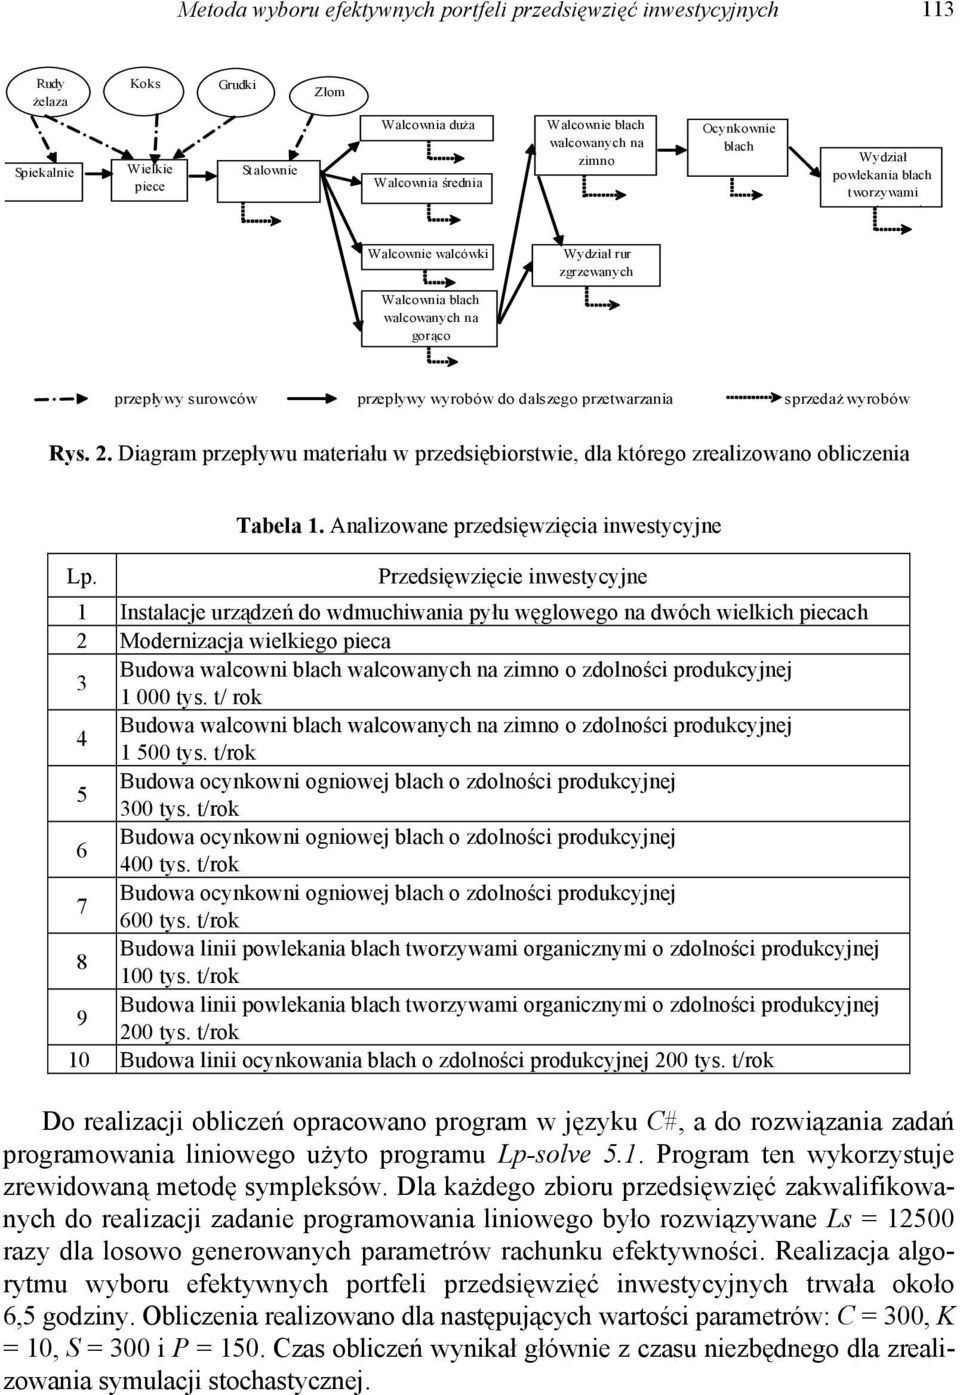 sprzedaż wyrobów Rys. 2. Diagram przepływu maeriału w przedsiębiorswie, dla kórego zrealizowano obliczenia Lp. Tabela 1.